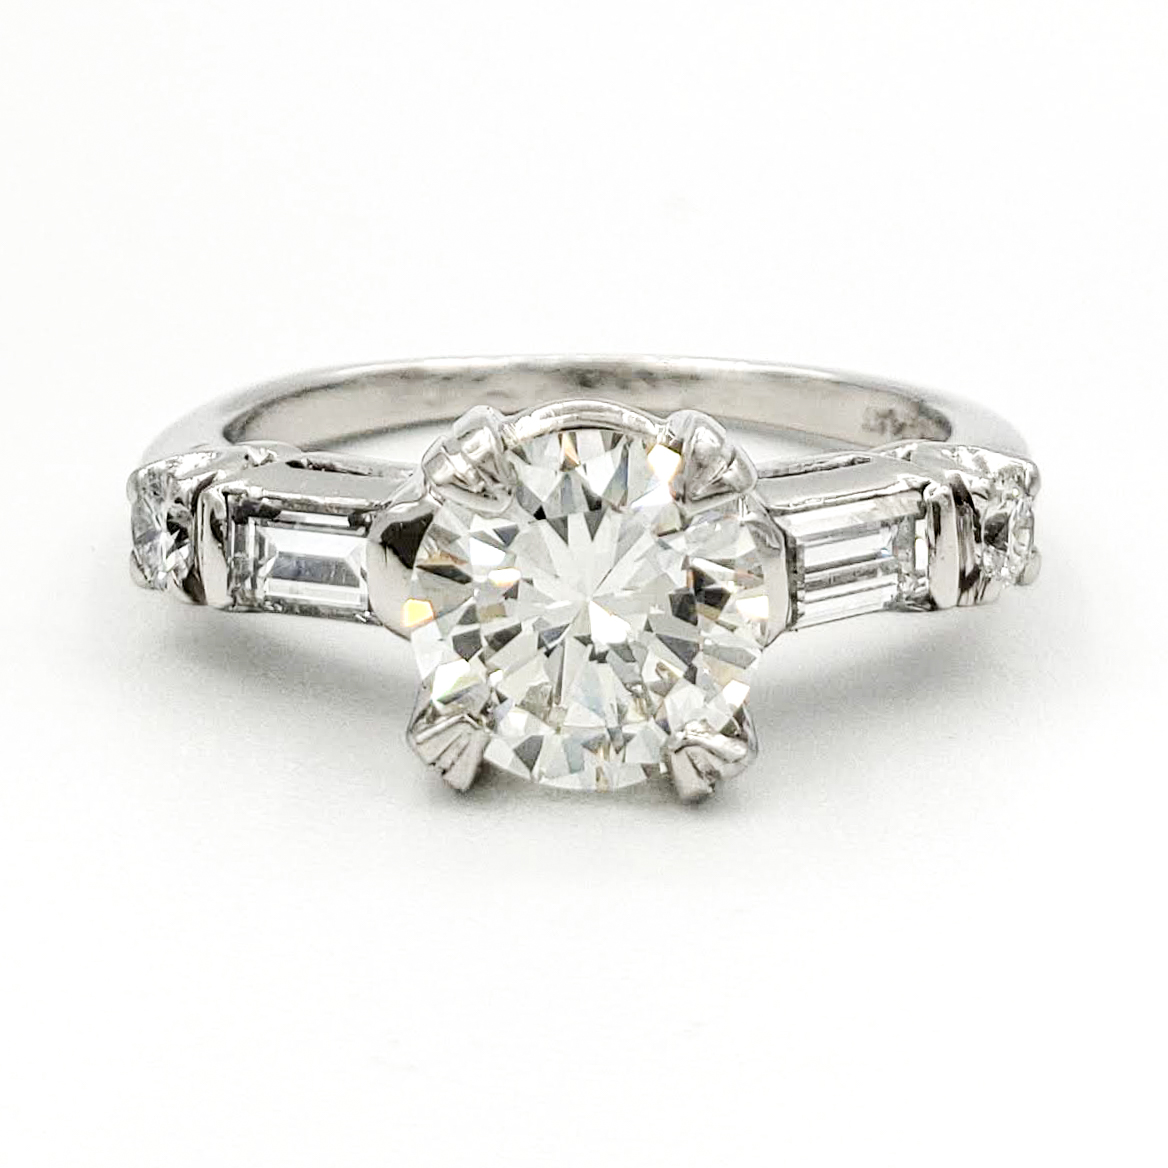 vintage-platinum-engagement-ring-with-0-97-carat-round-brilliant-cut-diamond-egl-h-vs1